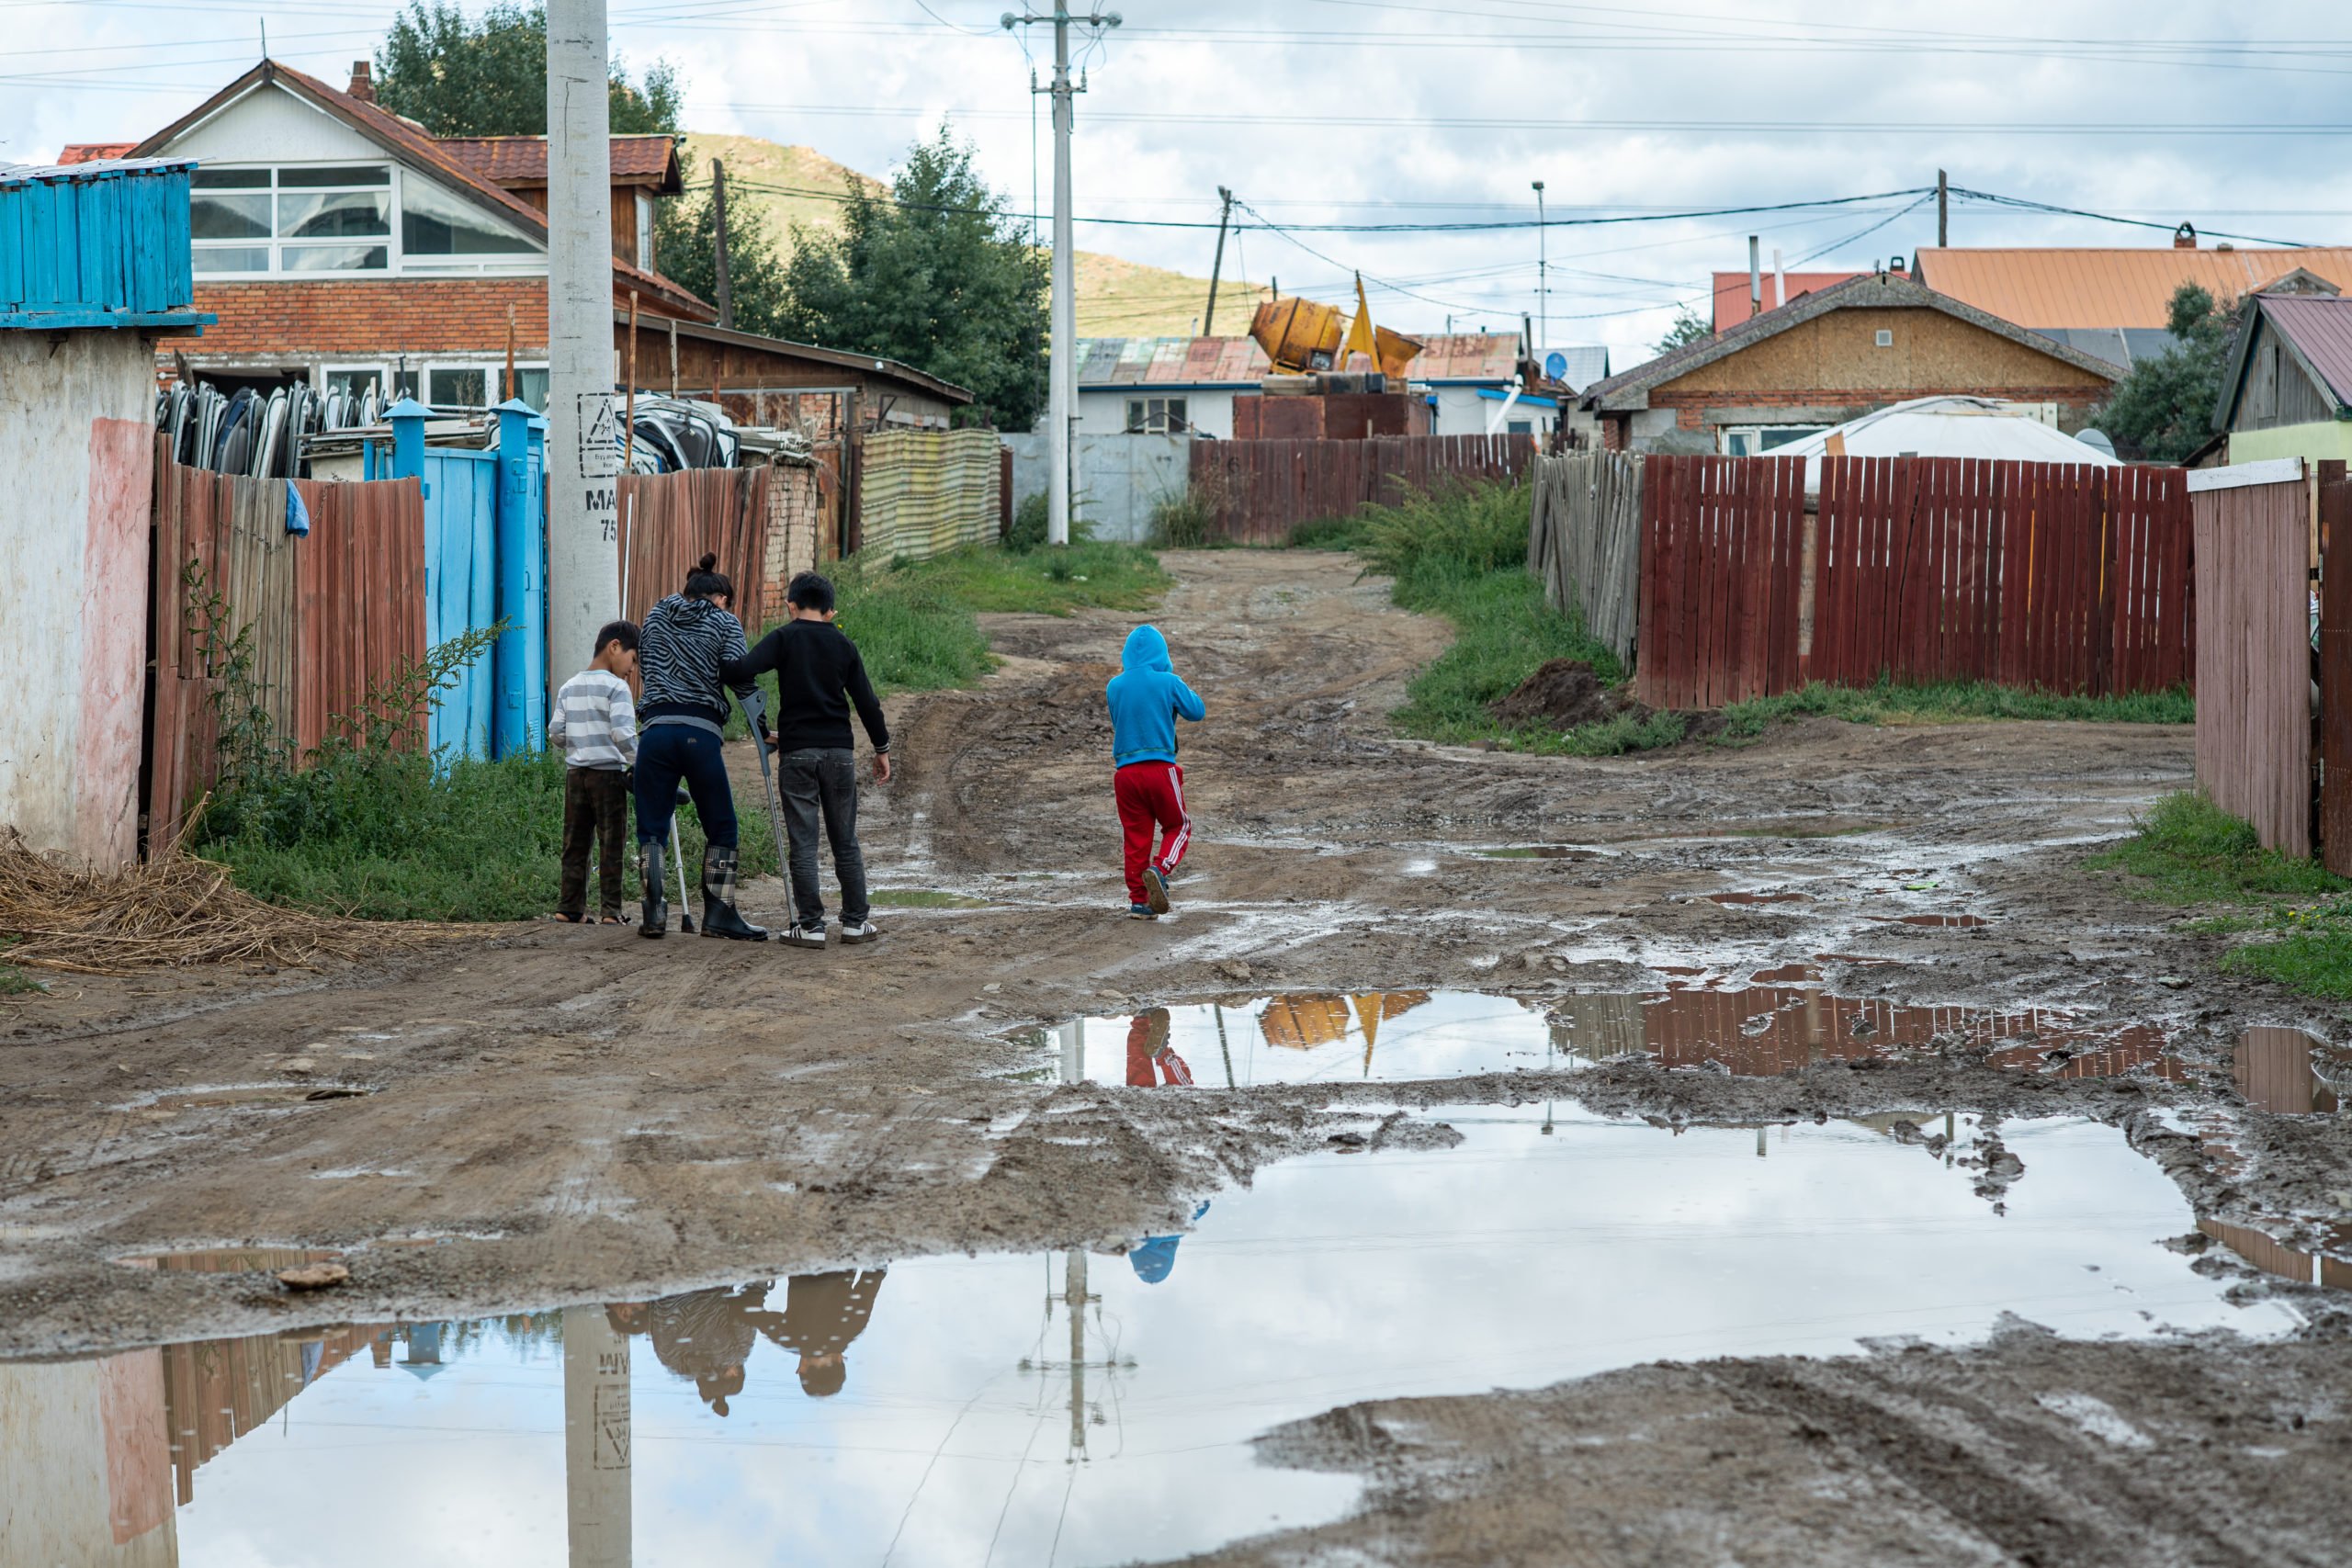 children walking in muddy area